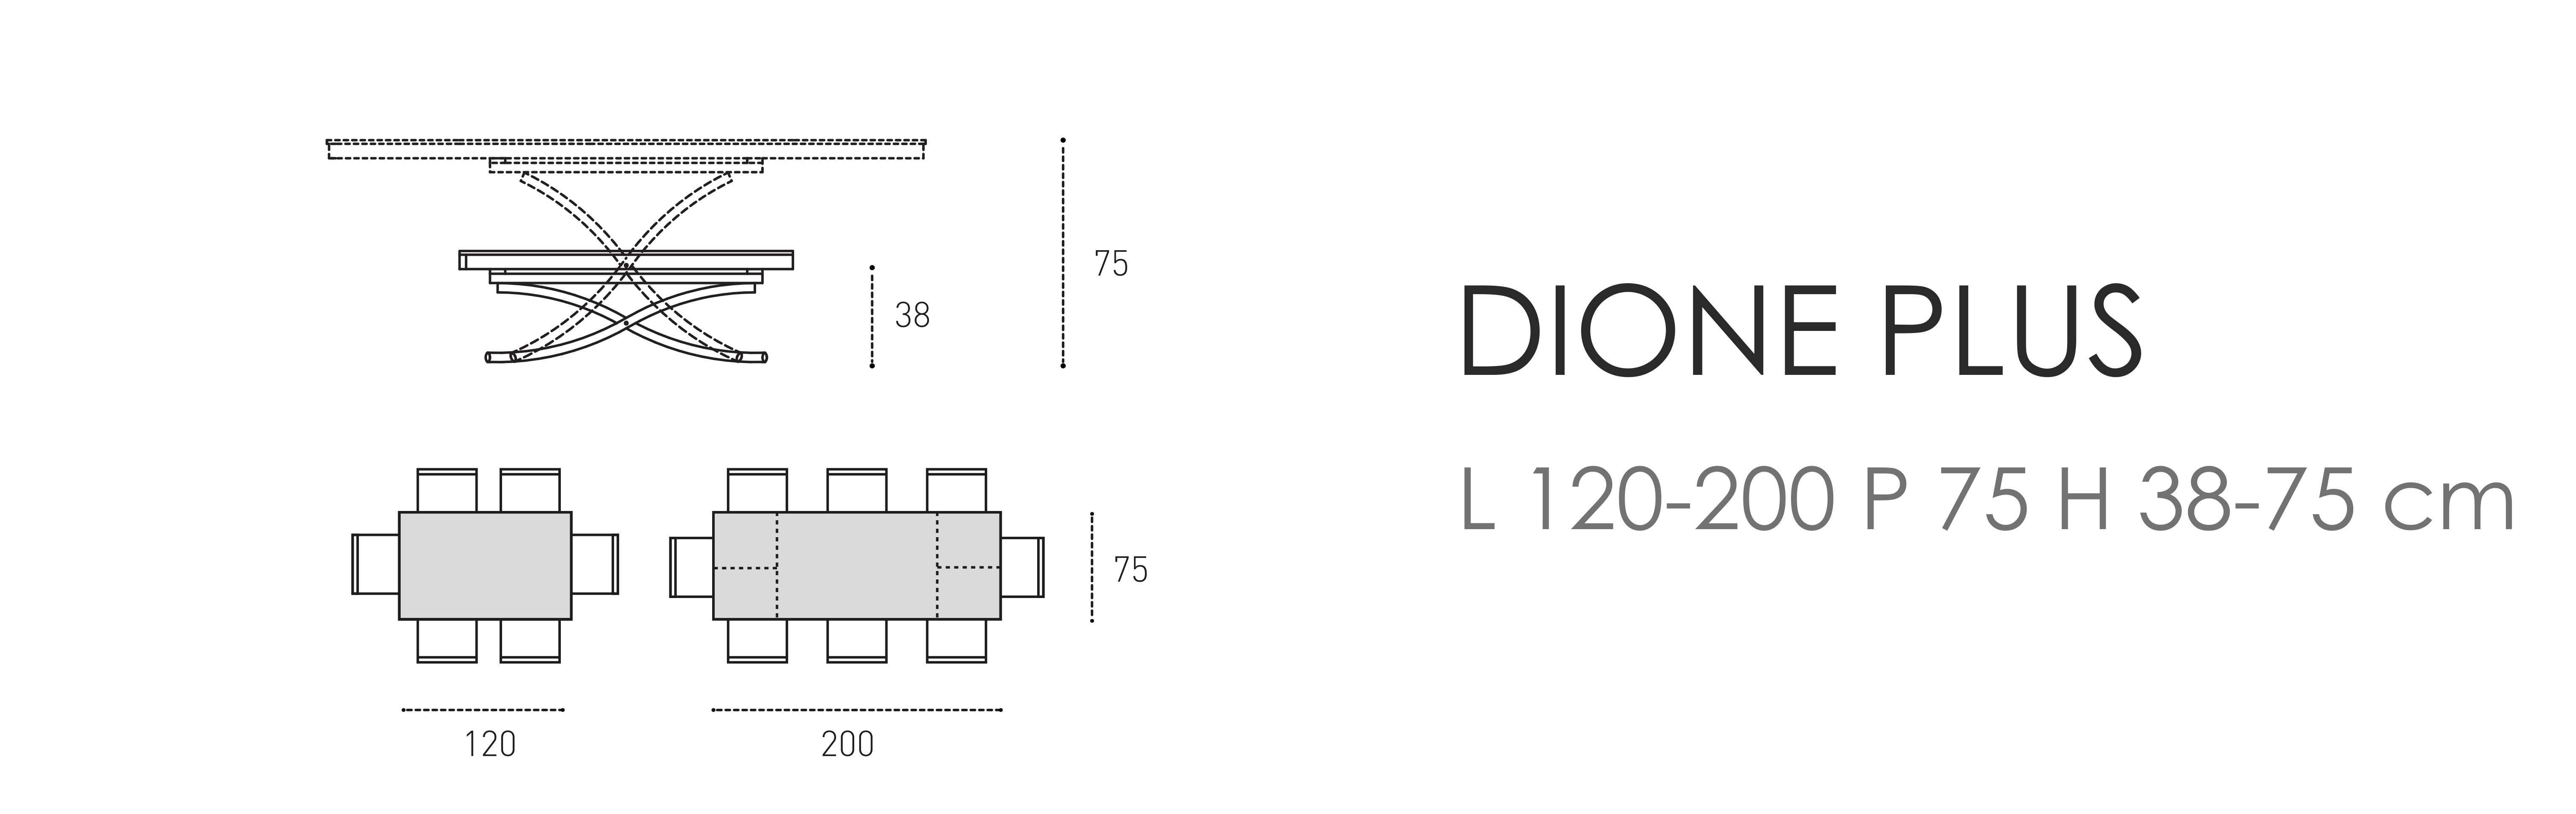 Dione Plus L 120-200 P 75 H 38-75 cm (стекло)